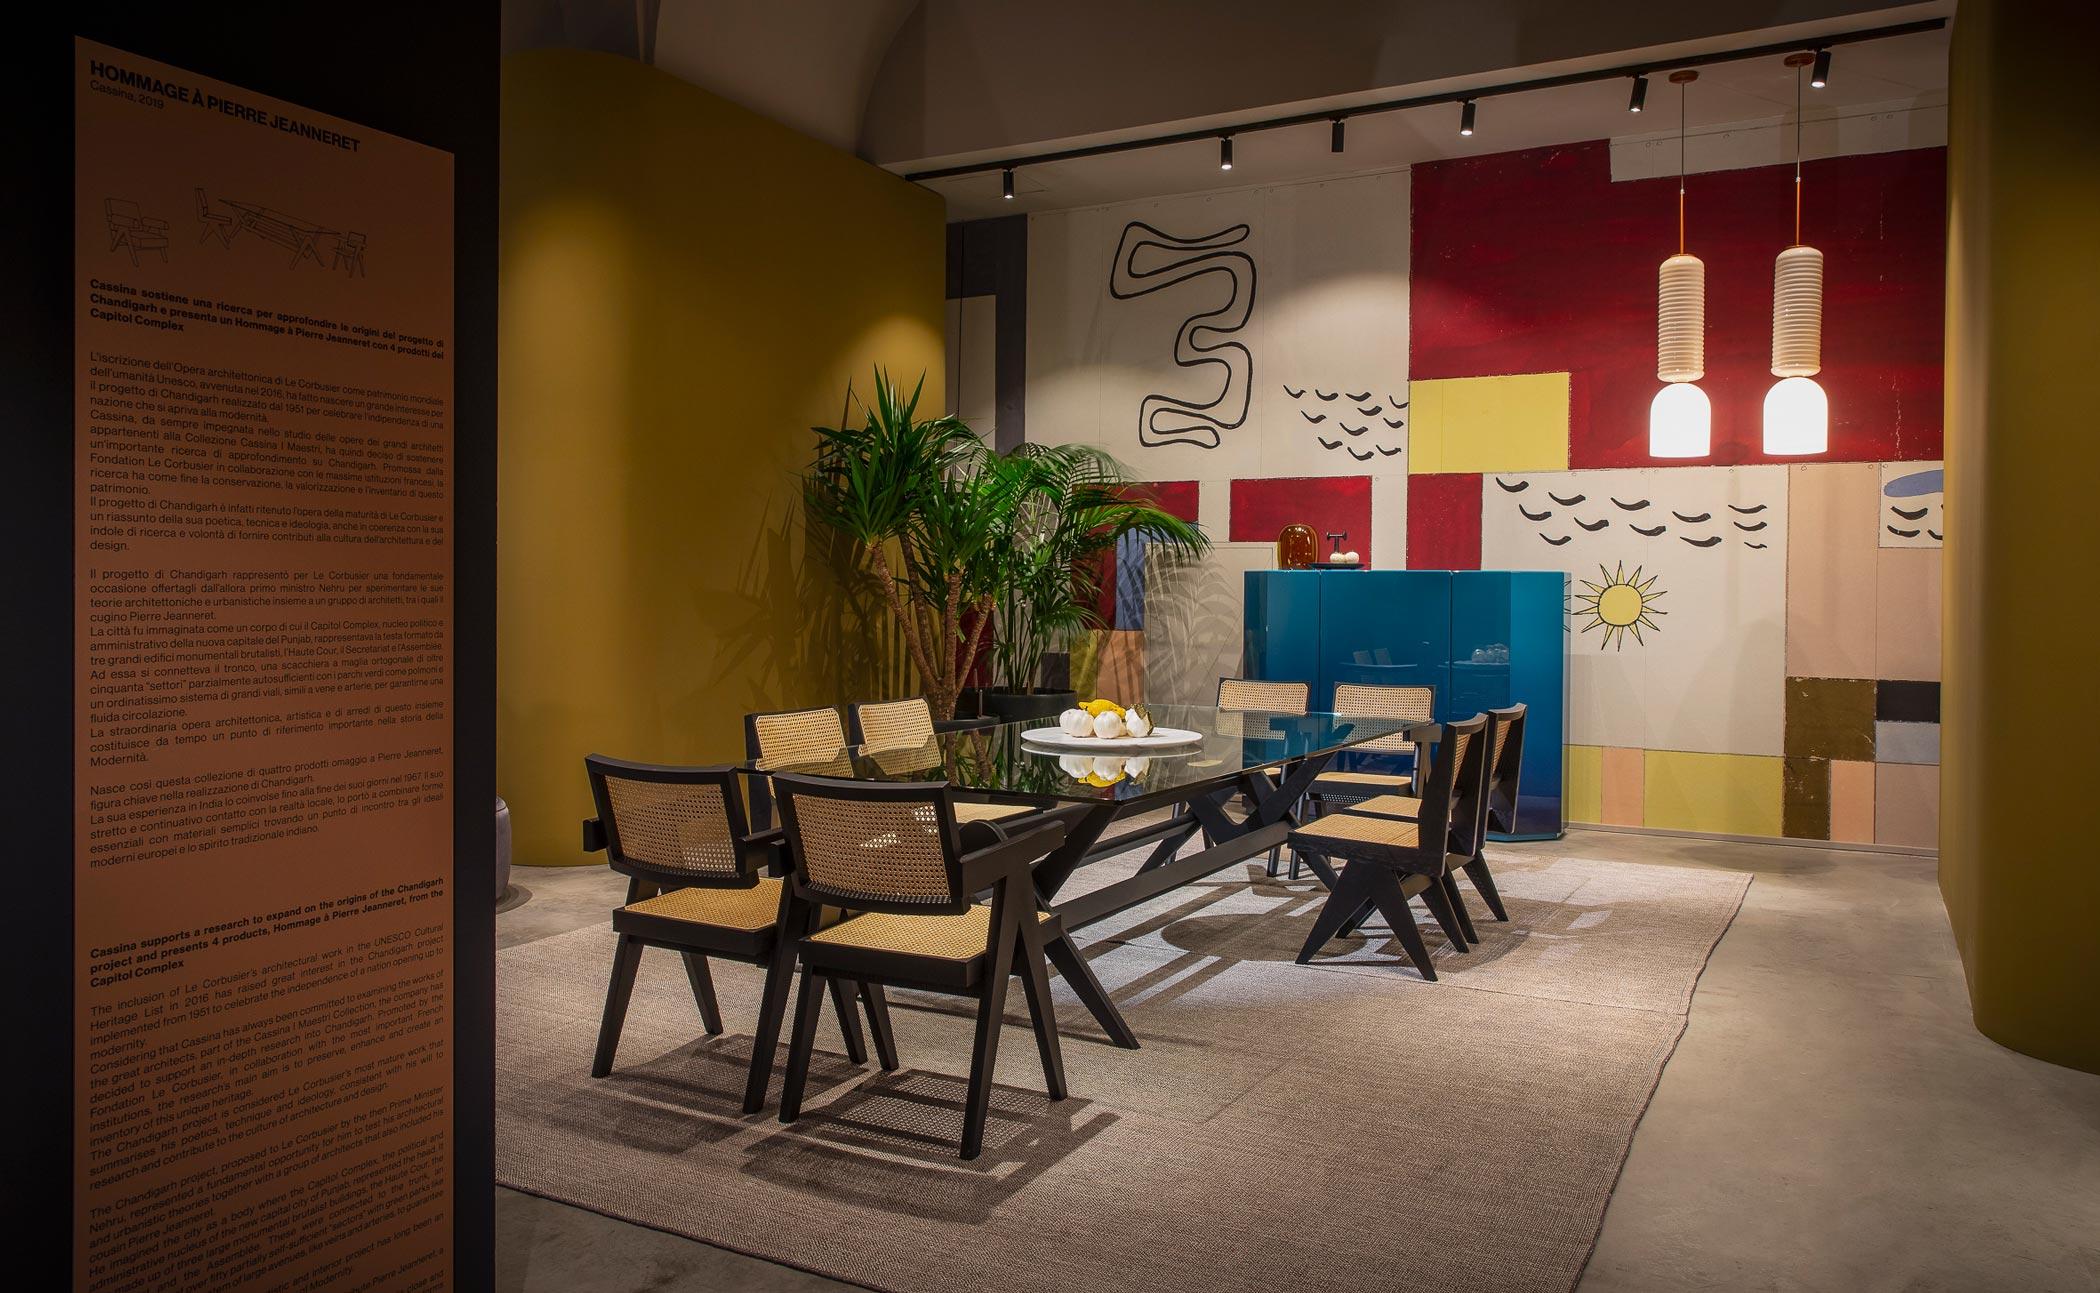 Ensemble de salle à manger conçu par Pierre Jeanneret vers 1950, relancé en 2019.
Fabriqué par Cassina en Italie.

Ensemble composé de 1 table à manger, 4 chaises Capitol complex et 4 chaises de bureau Capitol complex

L'inscription sur la